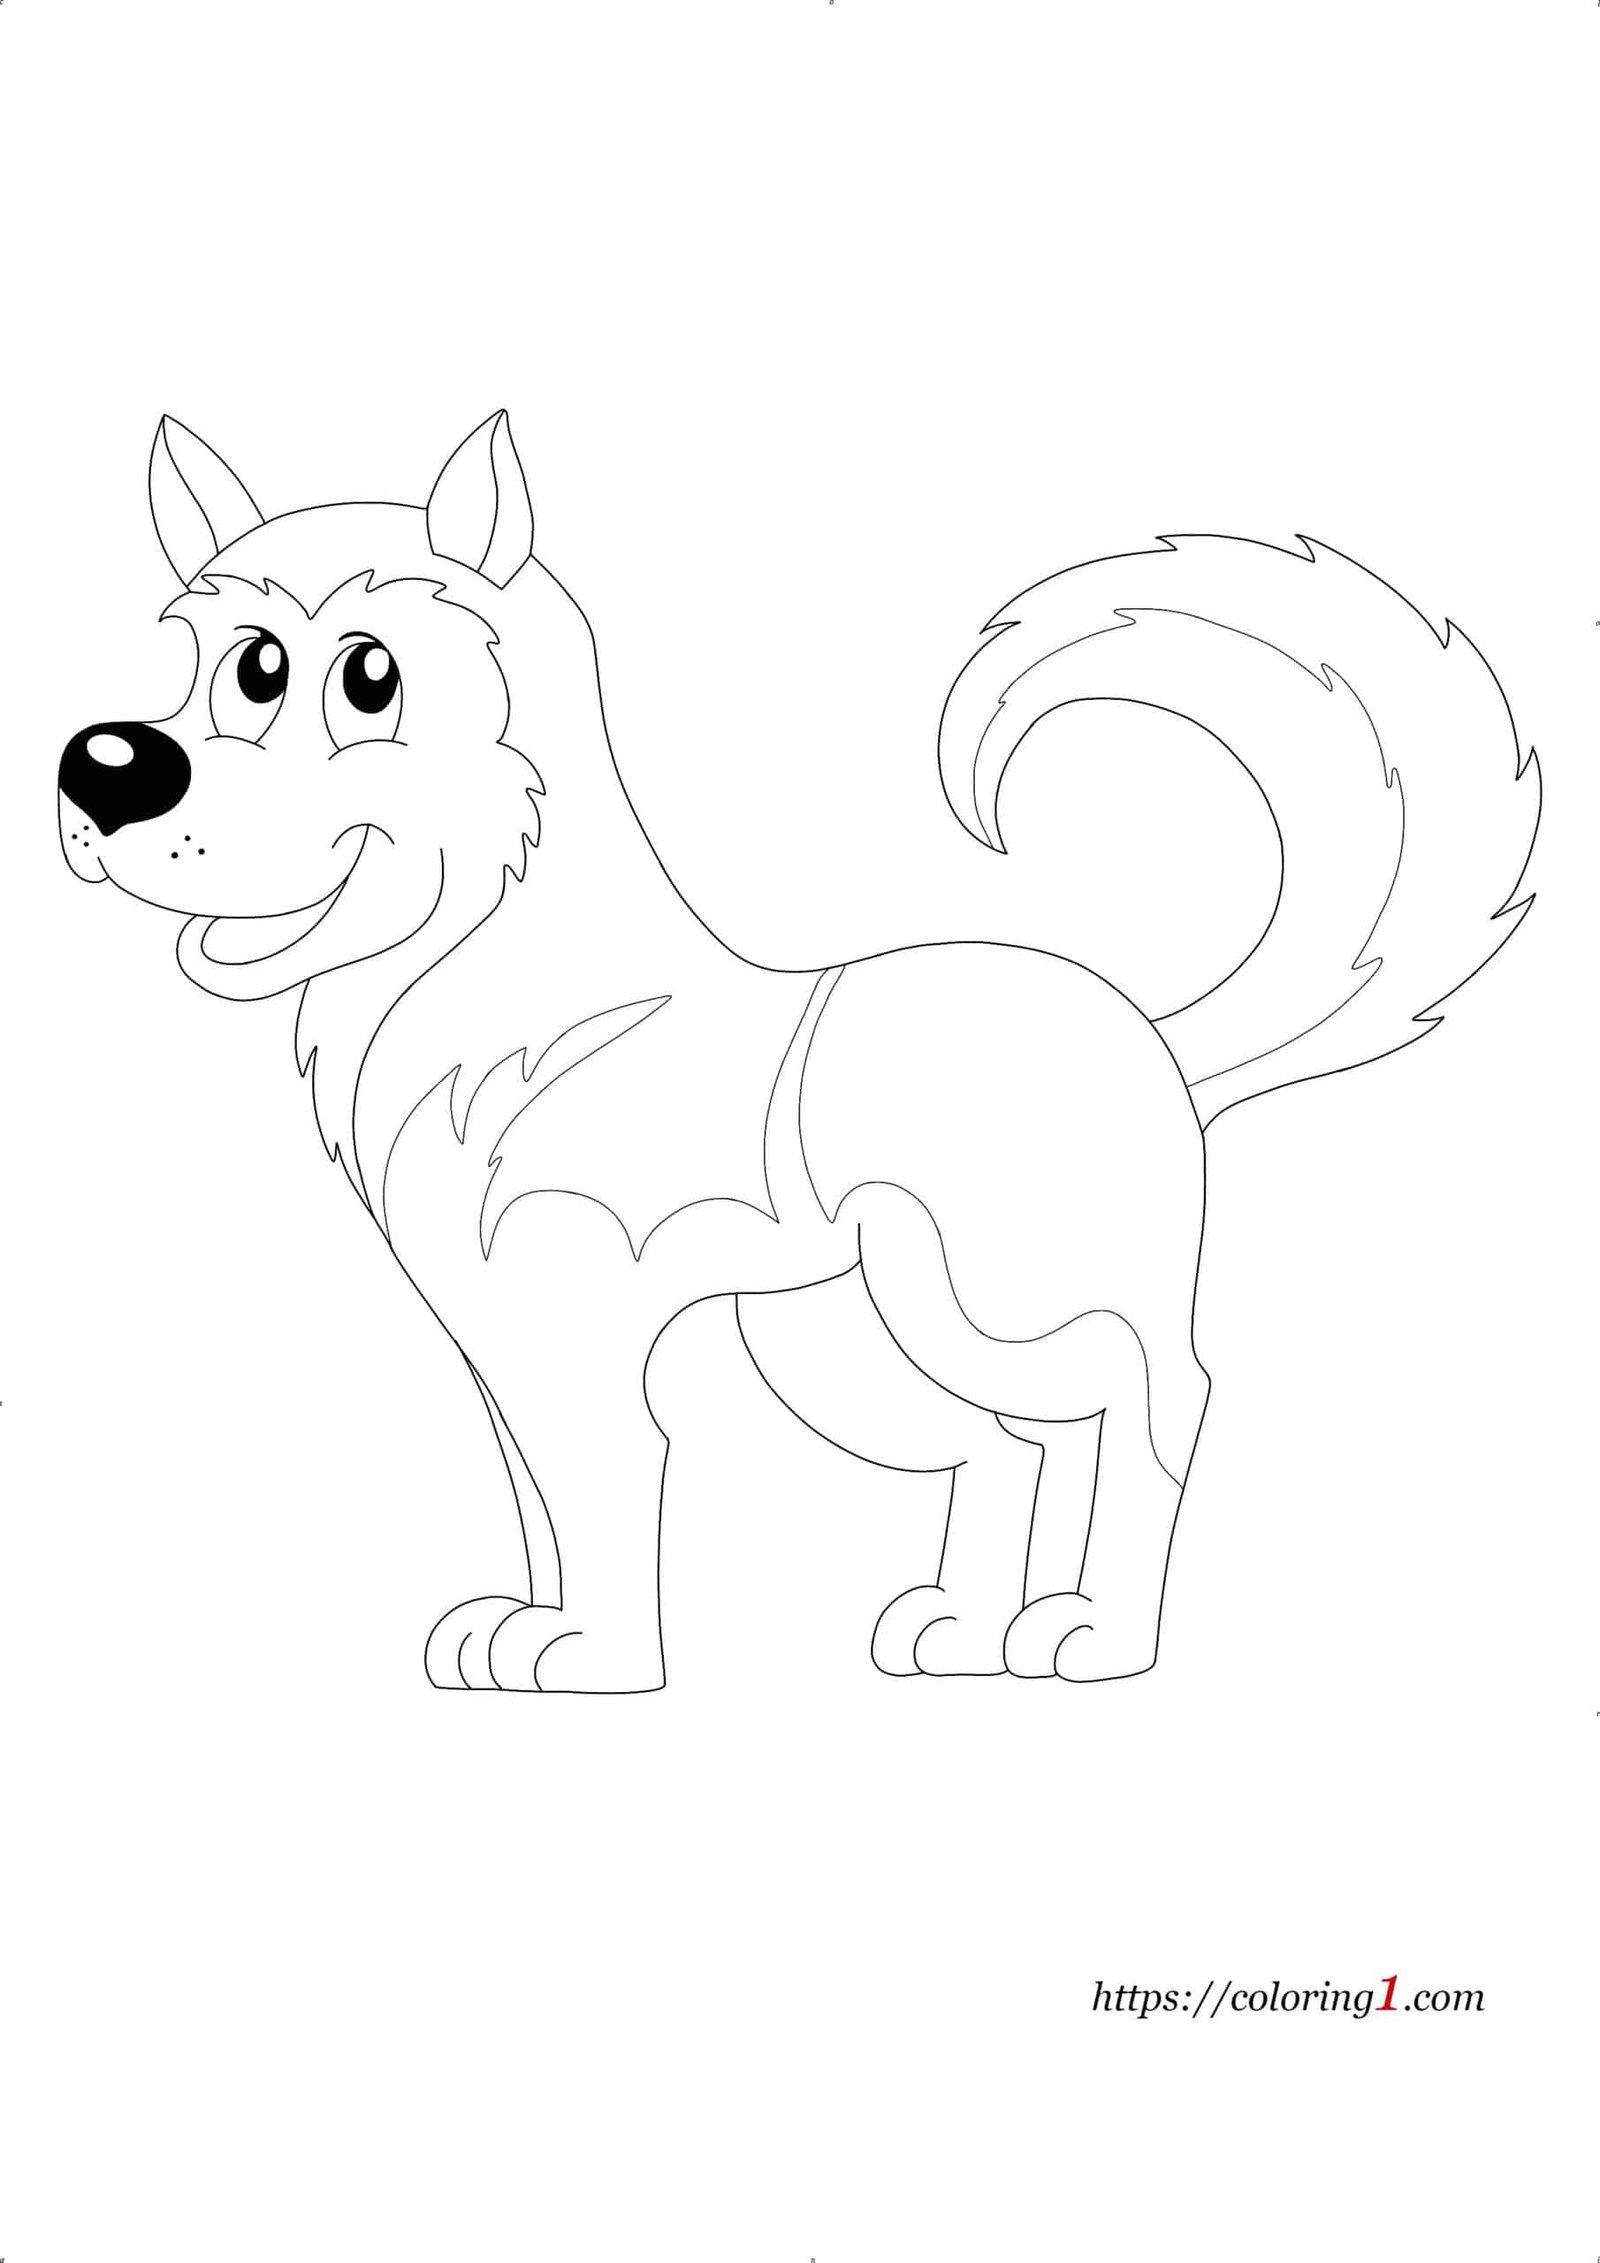 Husky Dog coloring page